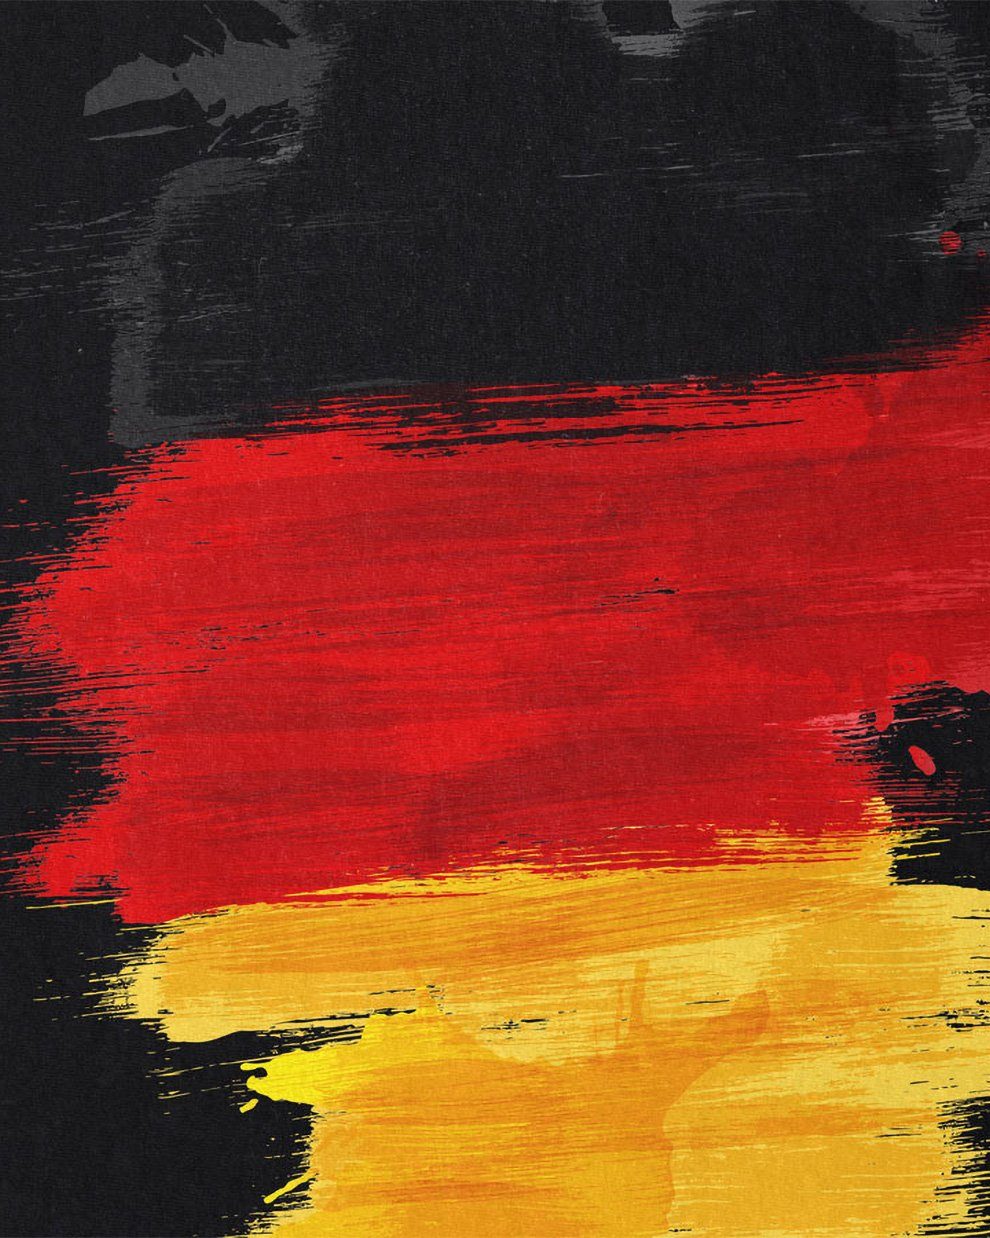 style3 Print-Shirt Herren T-Shirt WM Fahne Deutschland Flagge EM Sport Germany schwarz Fußball